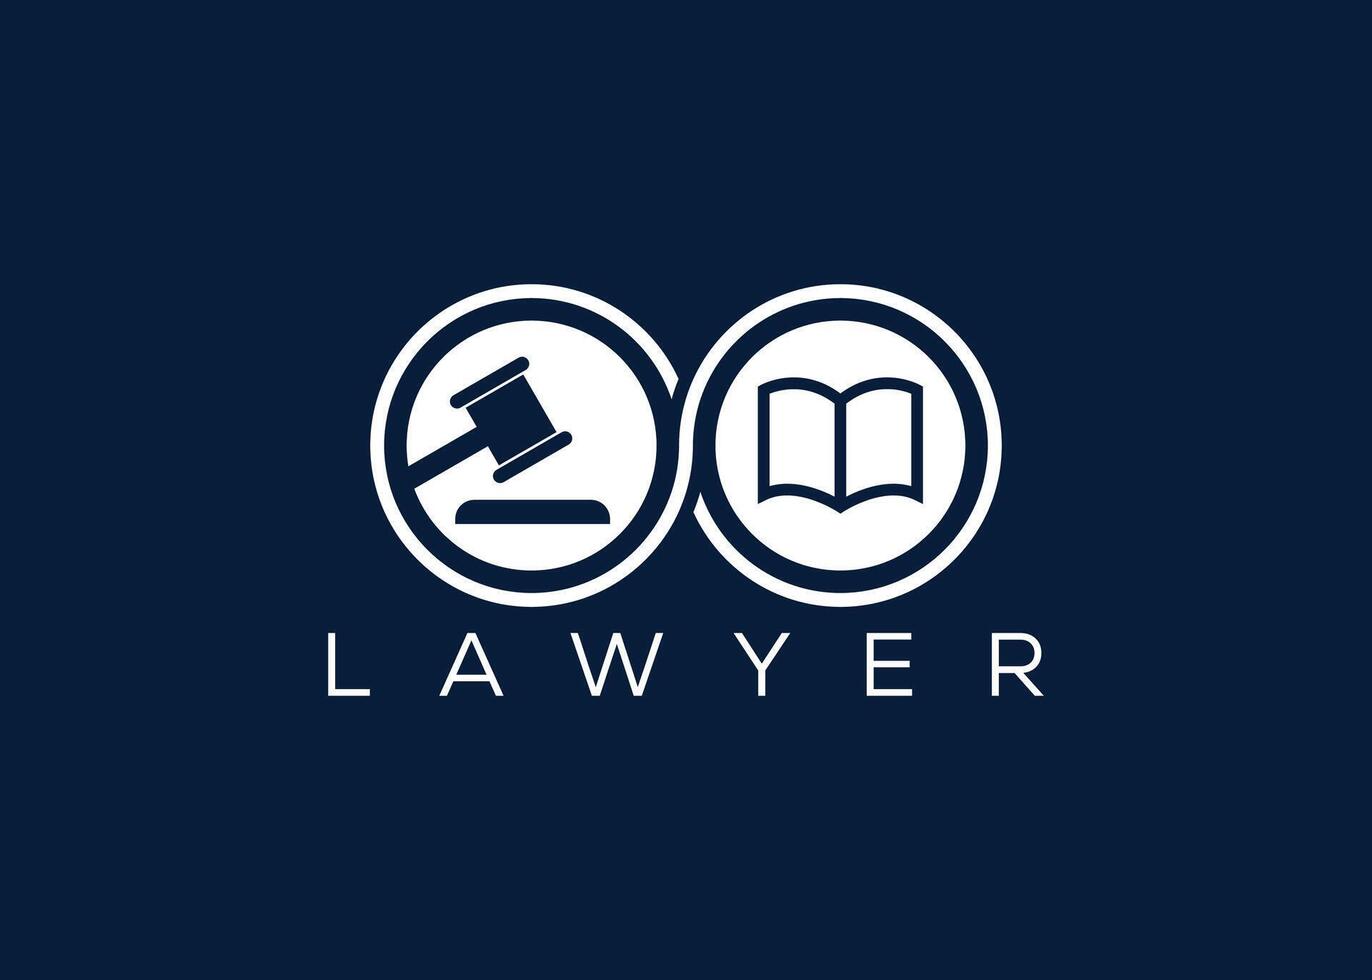 minimalista advogado logotipo Projeto vetor modelo